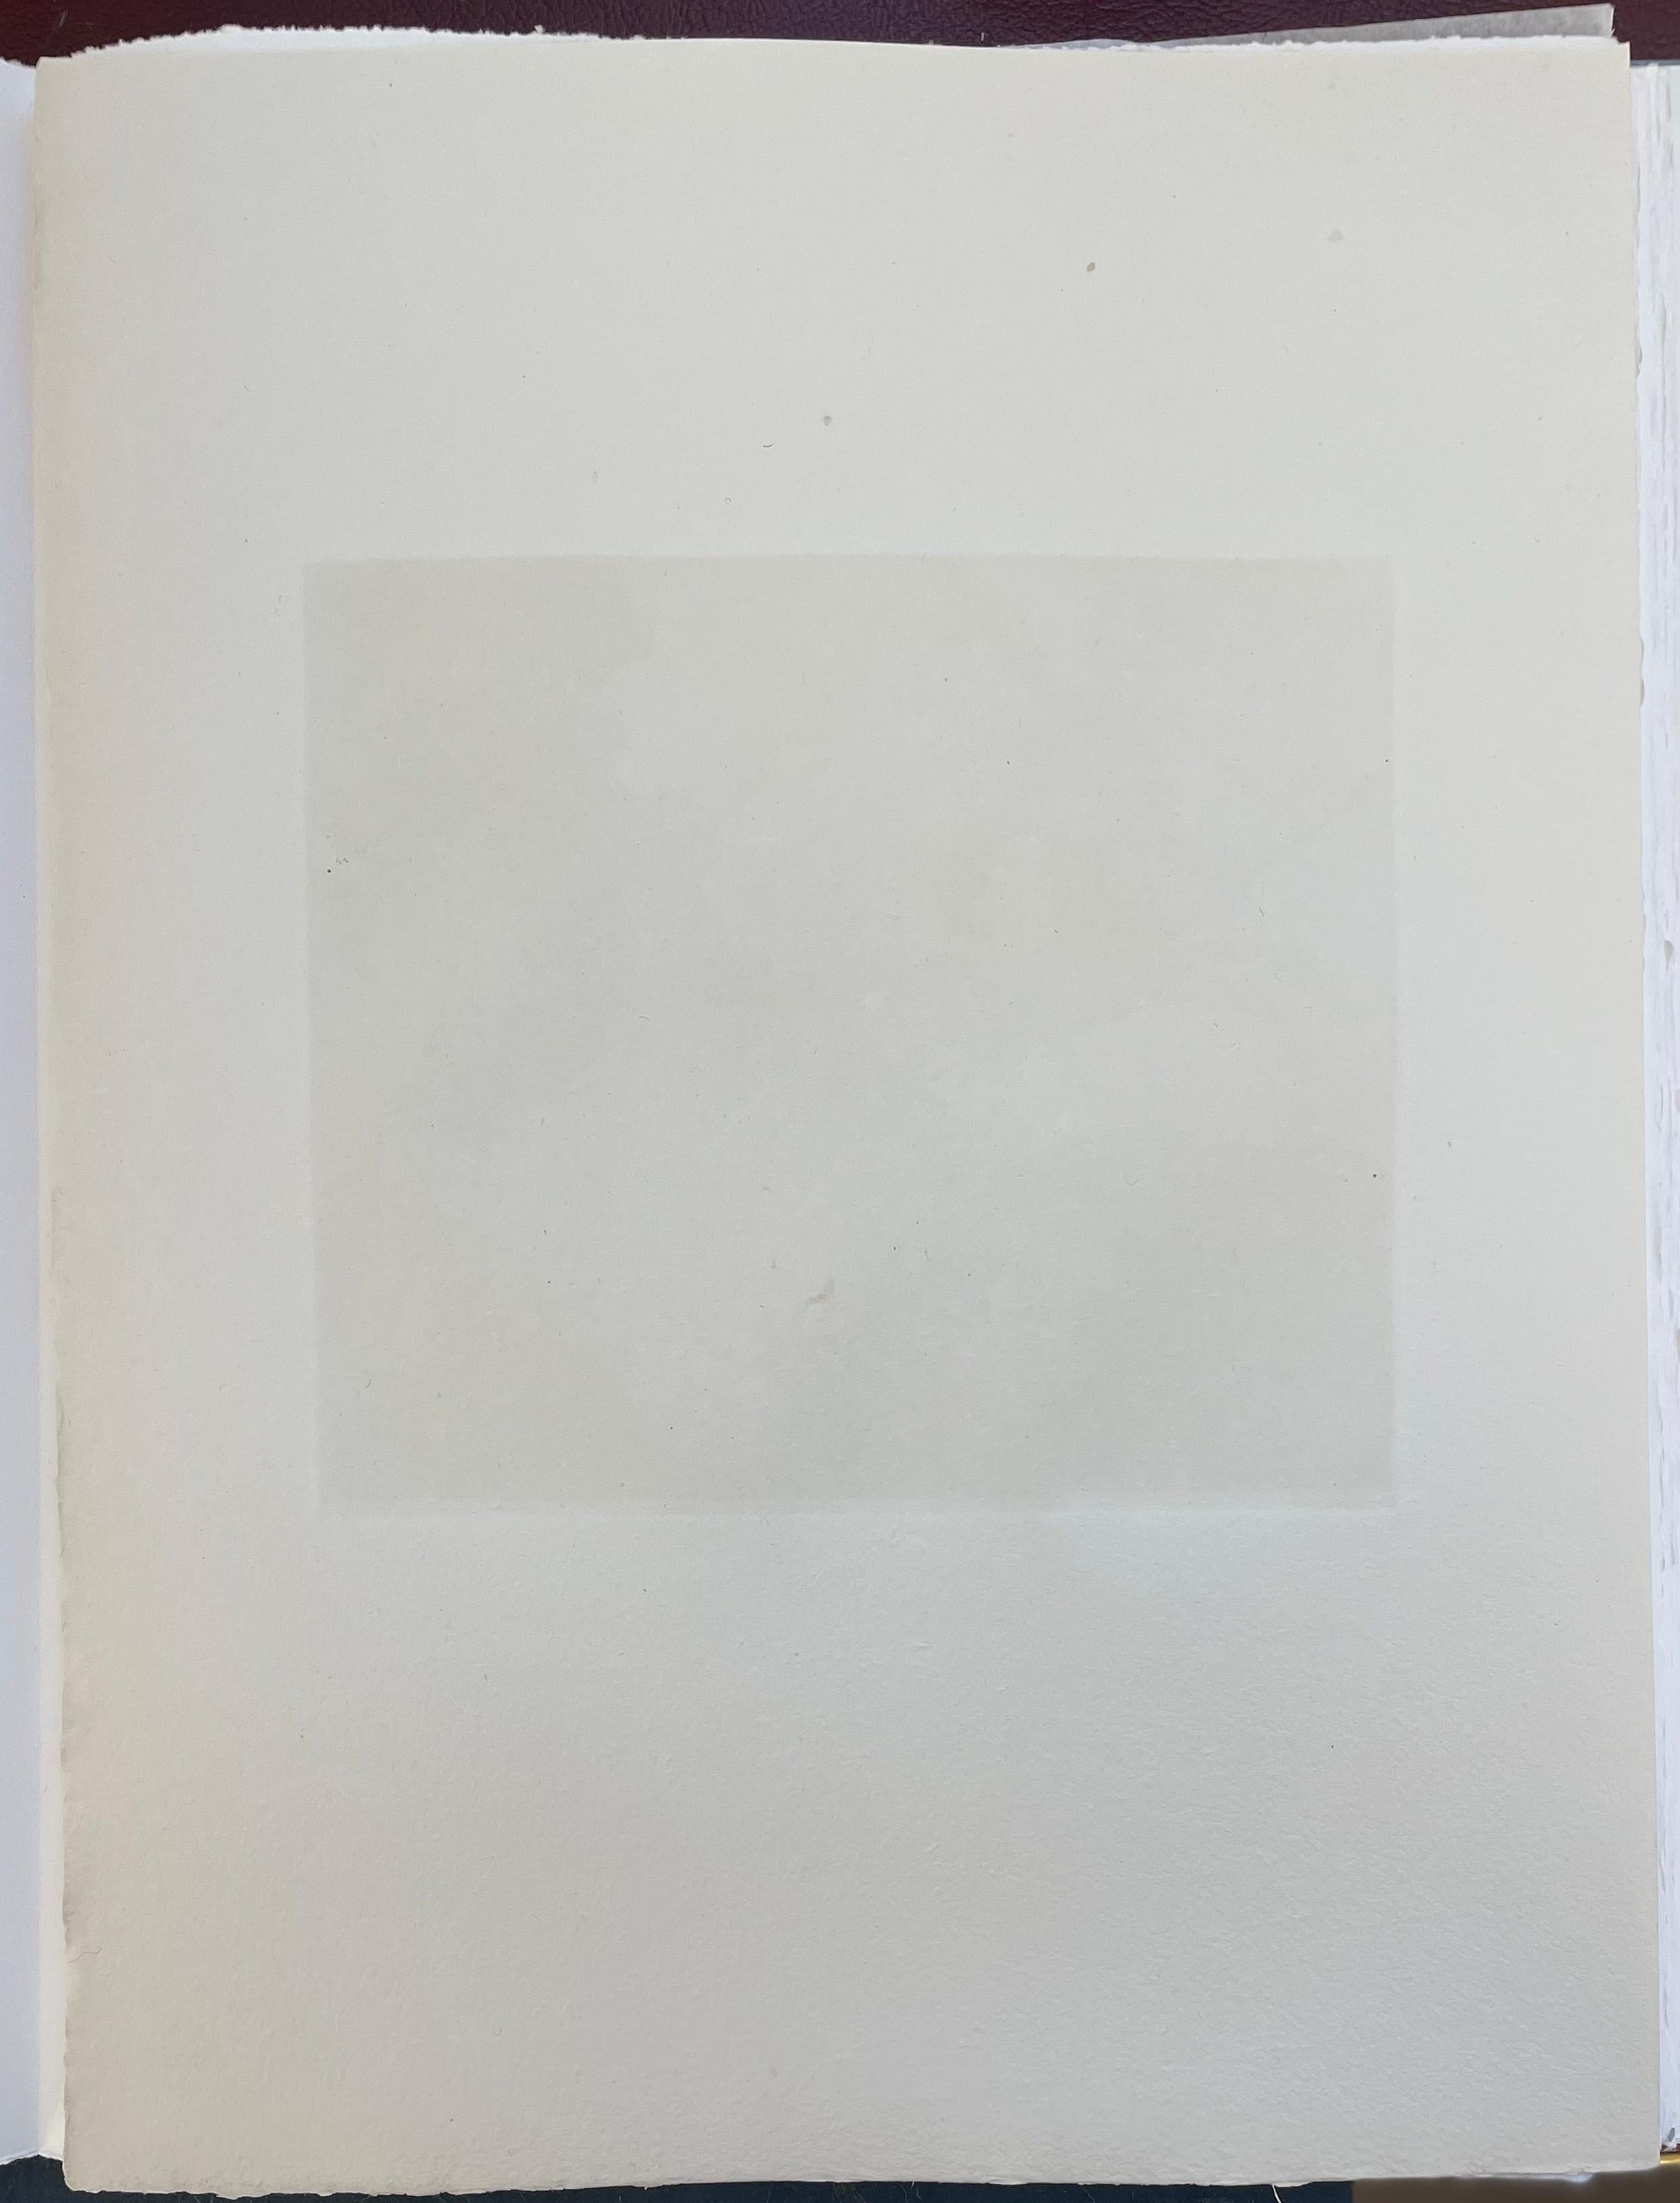 François-Xavier Lalanne (1927-2008) Actéon, 2005 
Techniques : aquatinte et vernis mou sur papier, signé au crayon par François Xavier Lalanne, en parfait état. 
Dimensions du papier : 38 x 28 cm (14,96 x 11 inches) 
Dimensions du tirage lui-même :